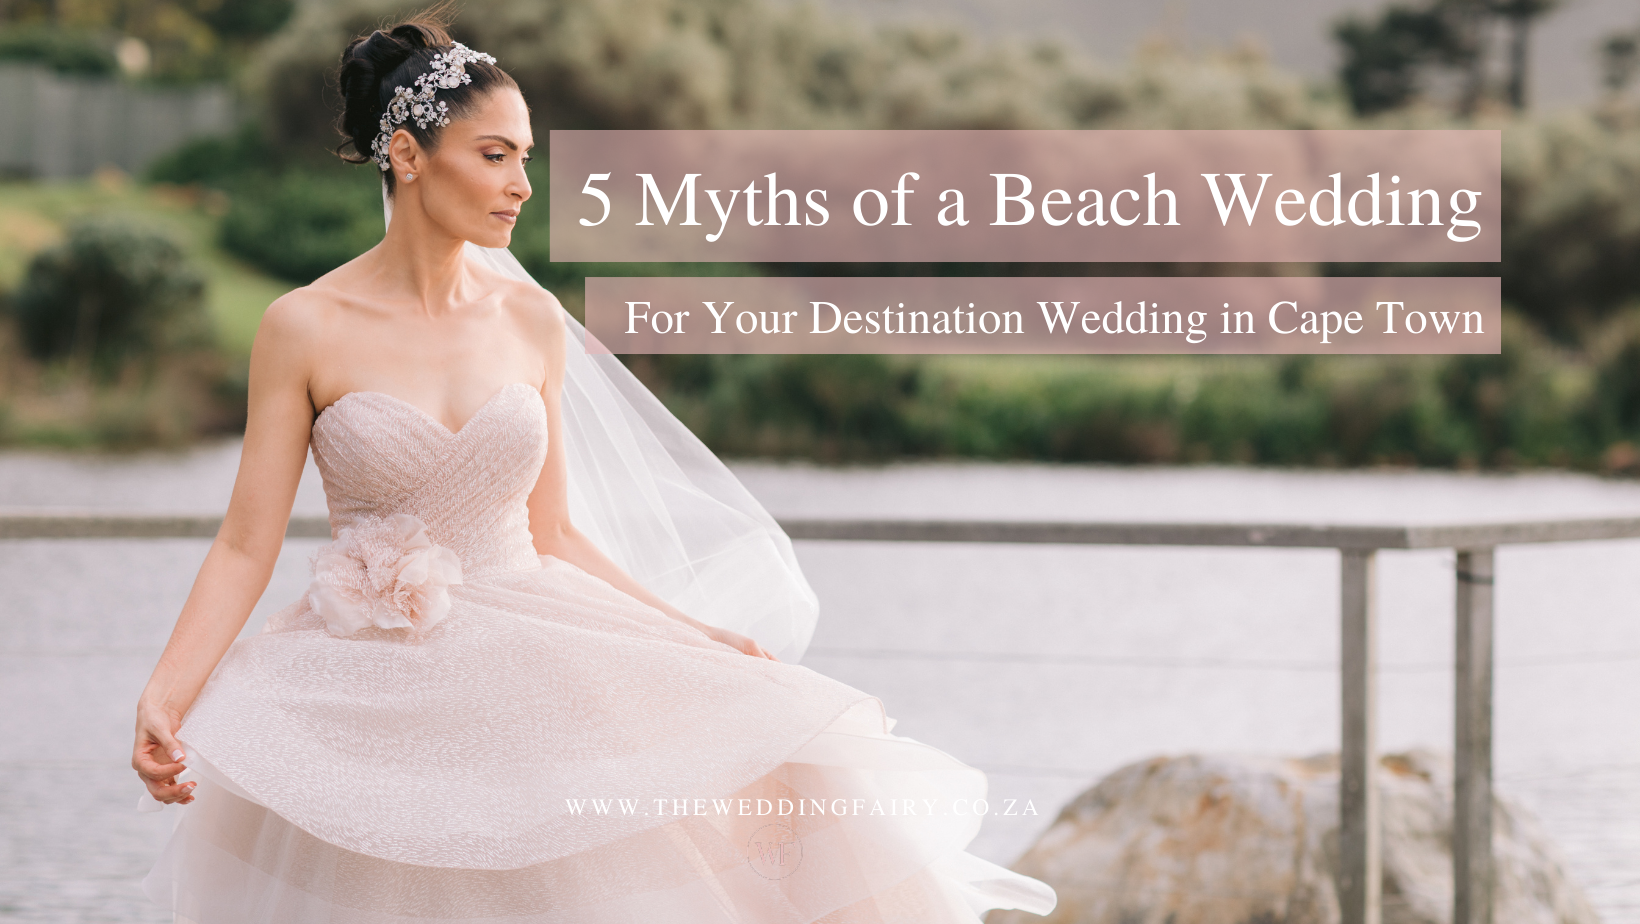 Cape Town Beach Wedding Myths